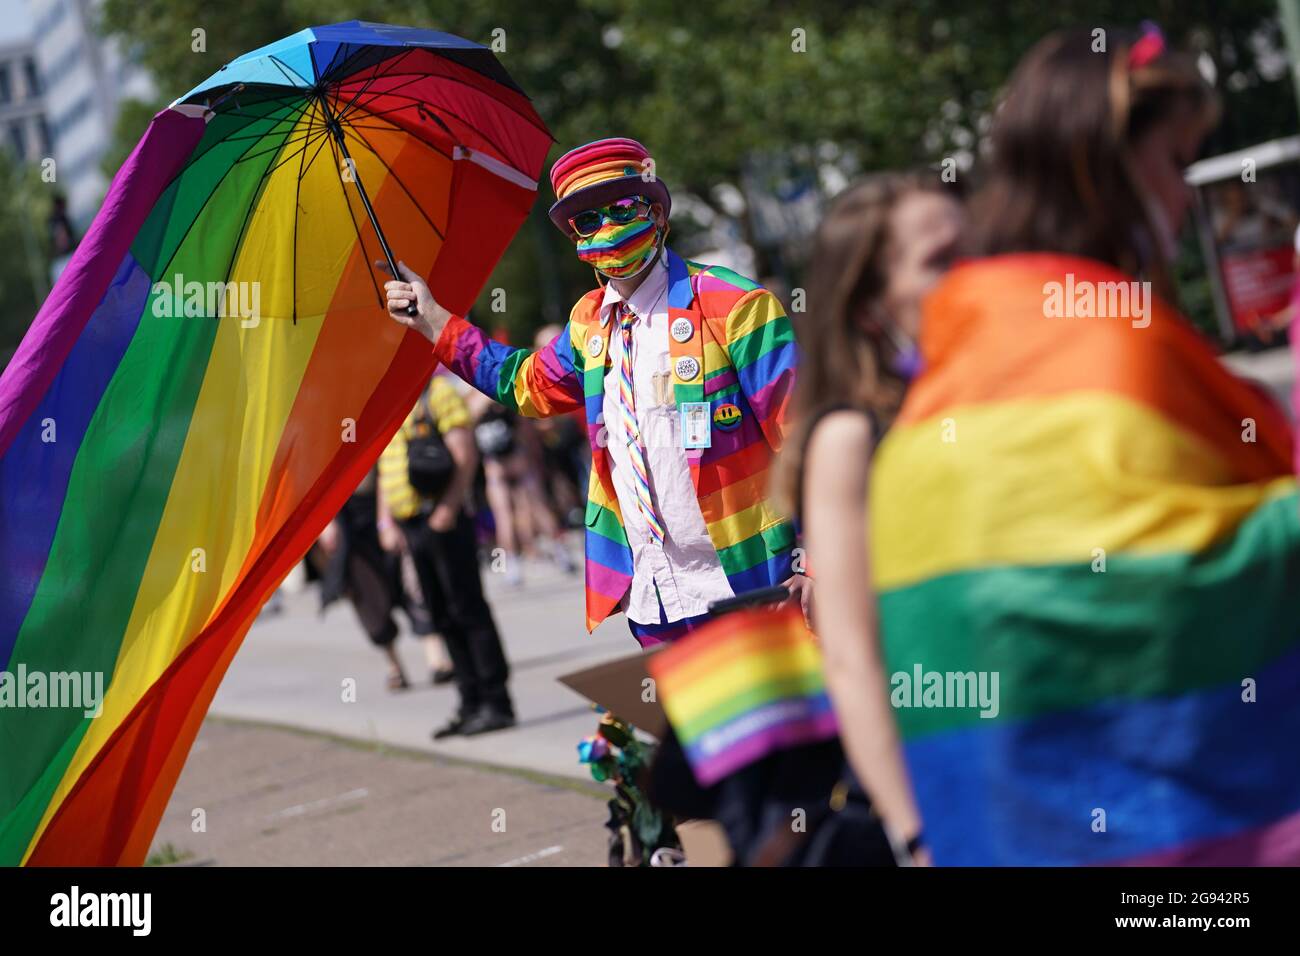 Berlino, Germania. 24 luglio 2021. Un uomo vestito di colori arcobaleno è  visto alla sfilata Christopher Street Day (CSD). Il motto ufficiale della  CSD è "Salva la nostra comunità - salva il